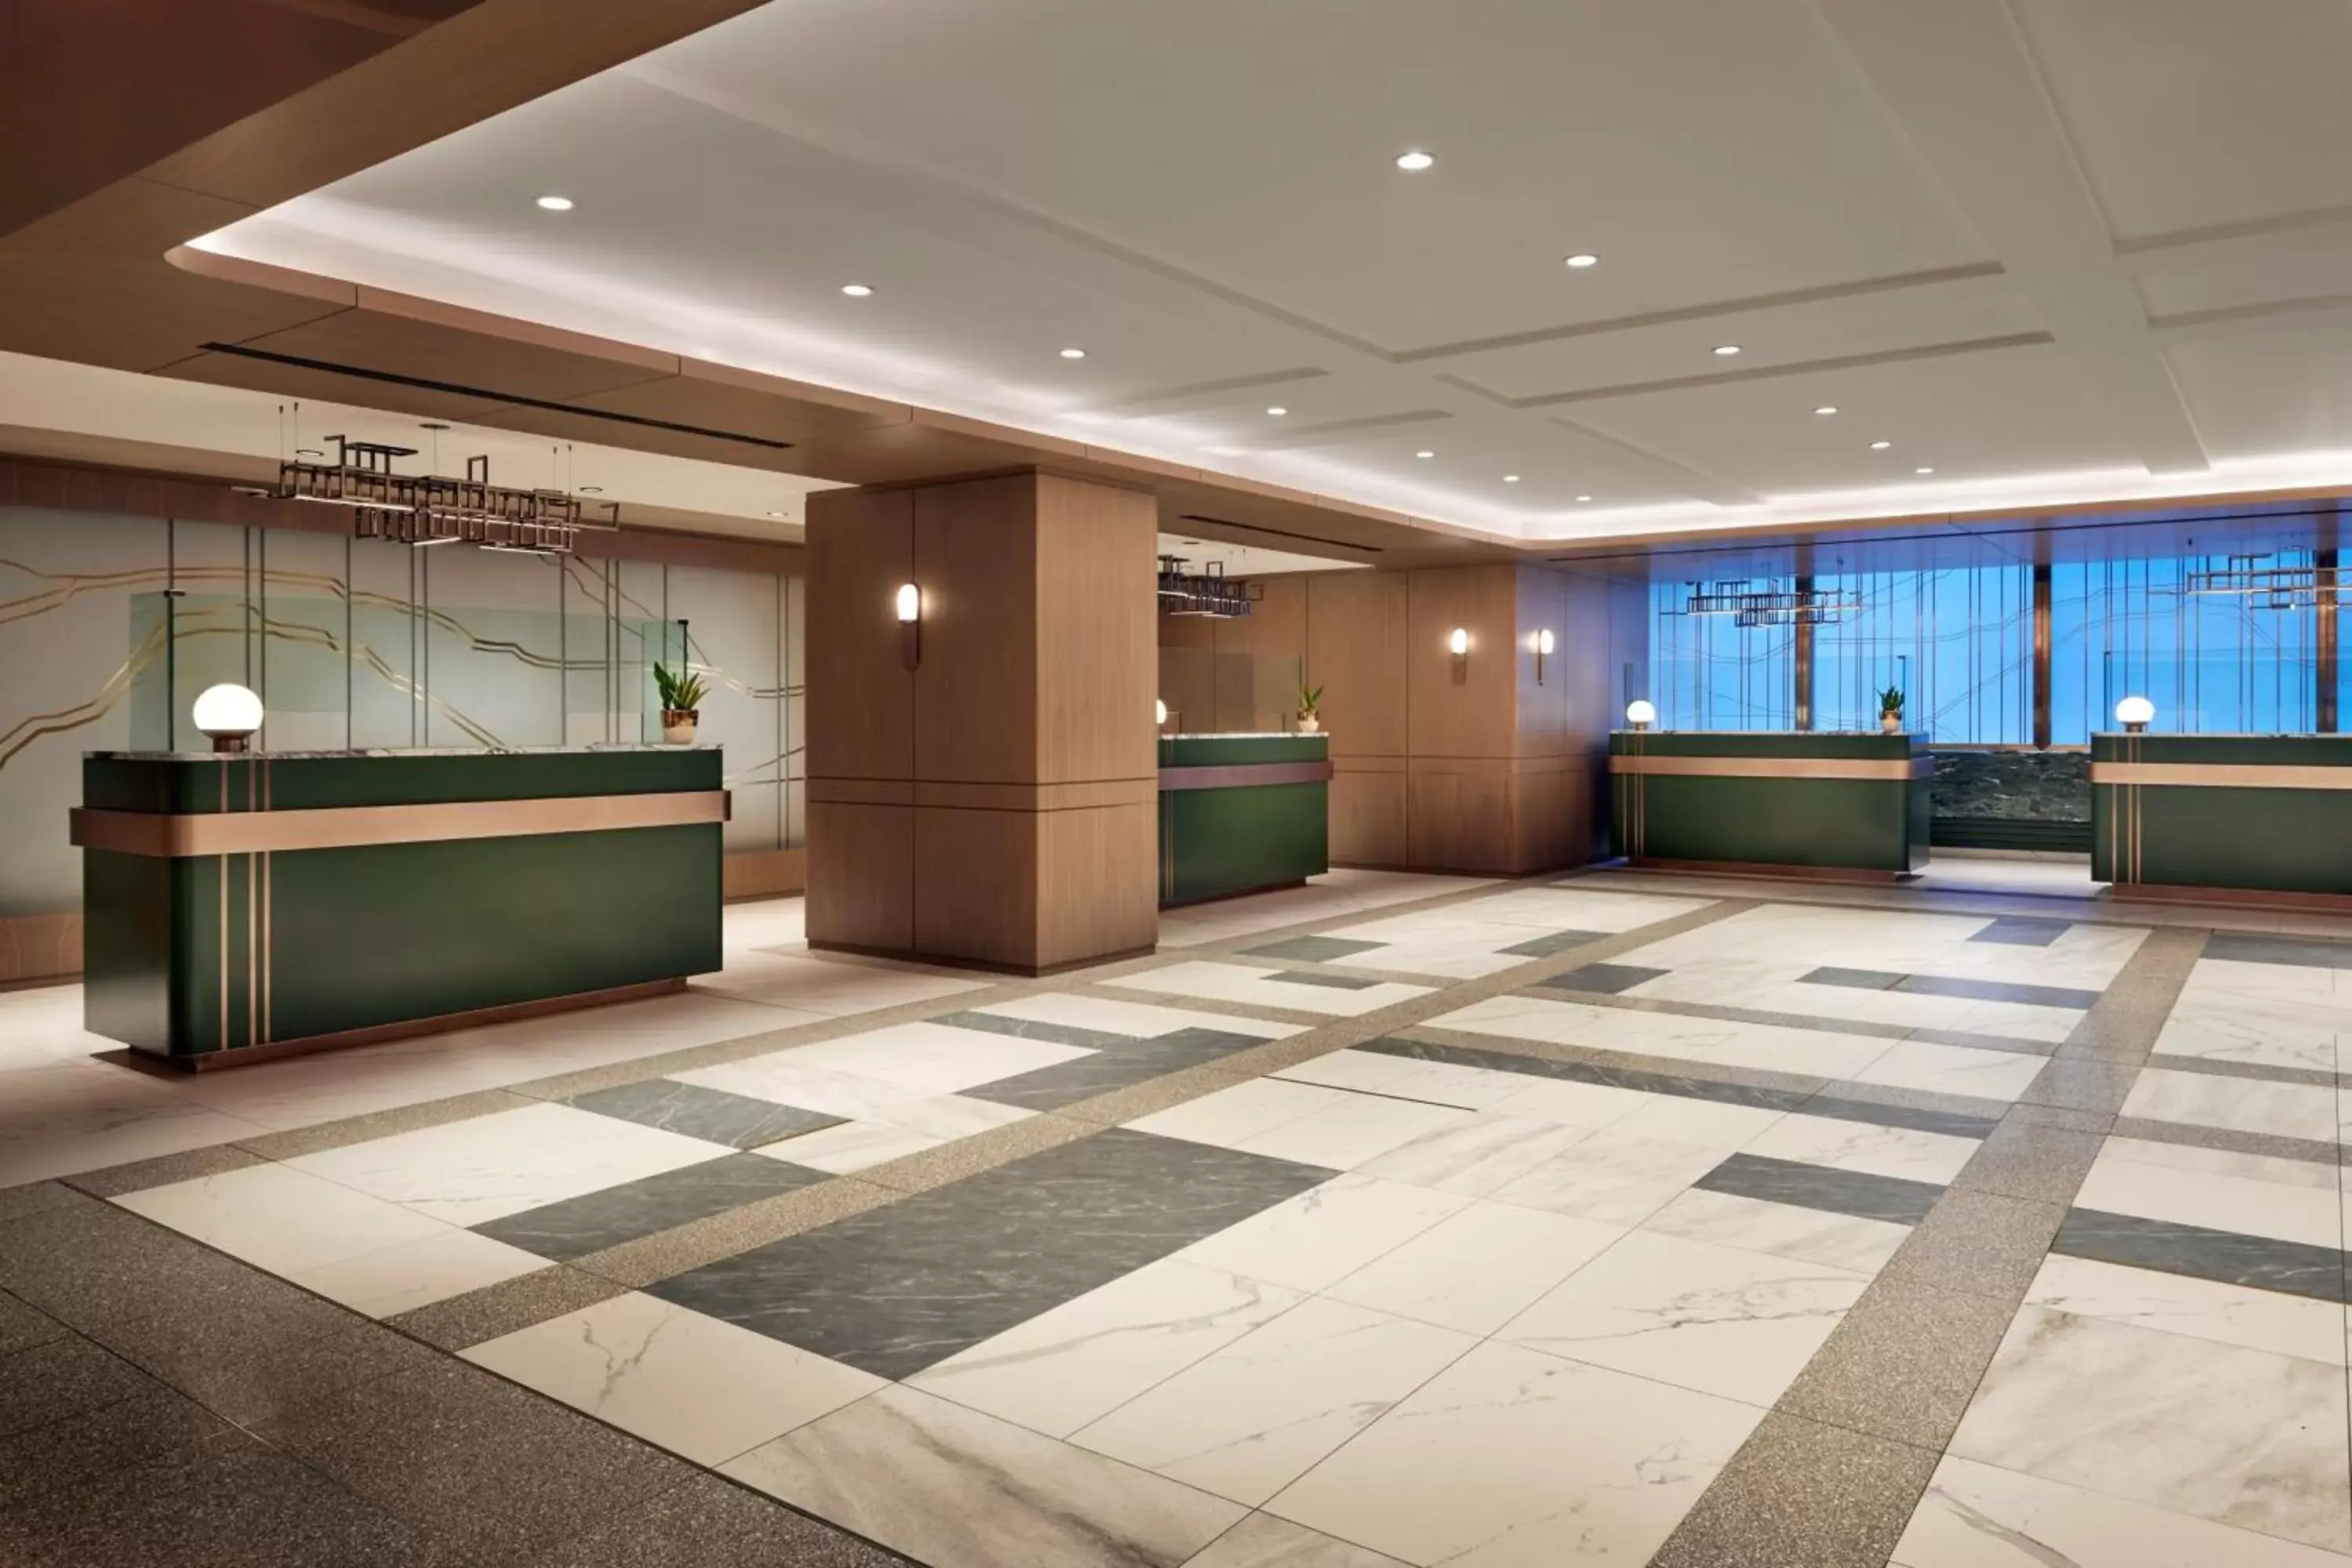 Lobby or reception, Lobby/Reception in Sheraton Centre Toronto Hotel